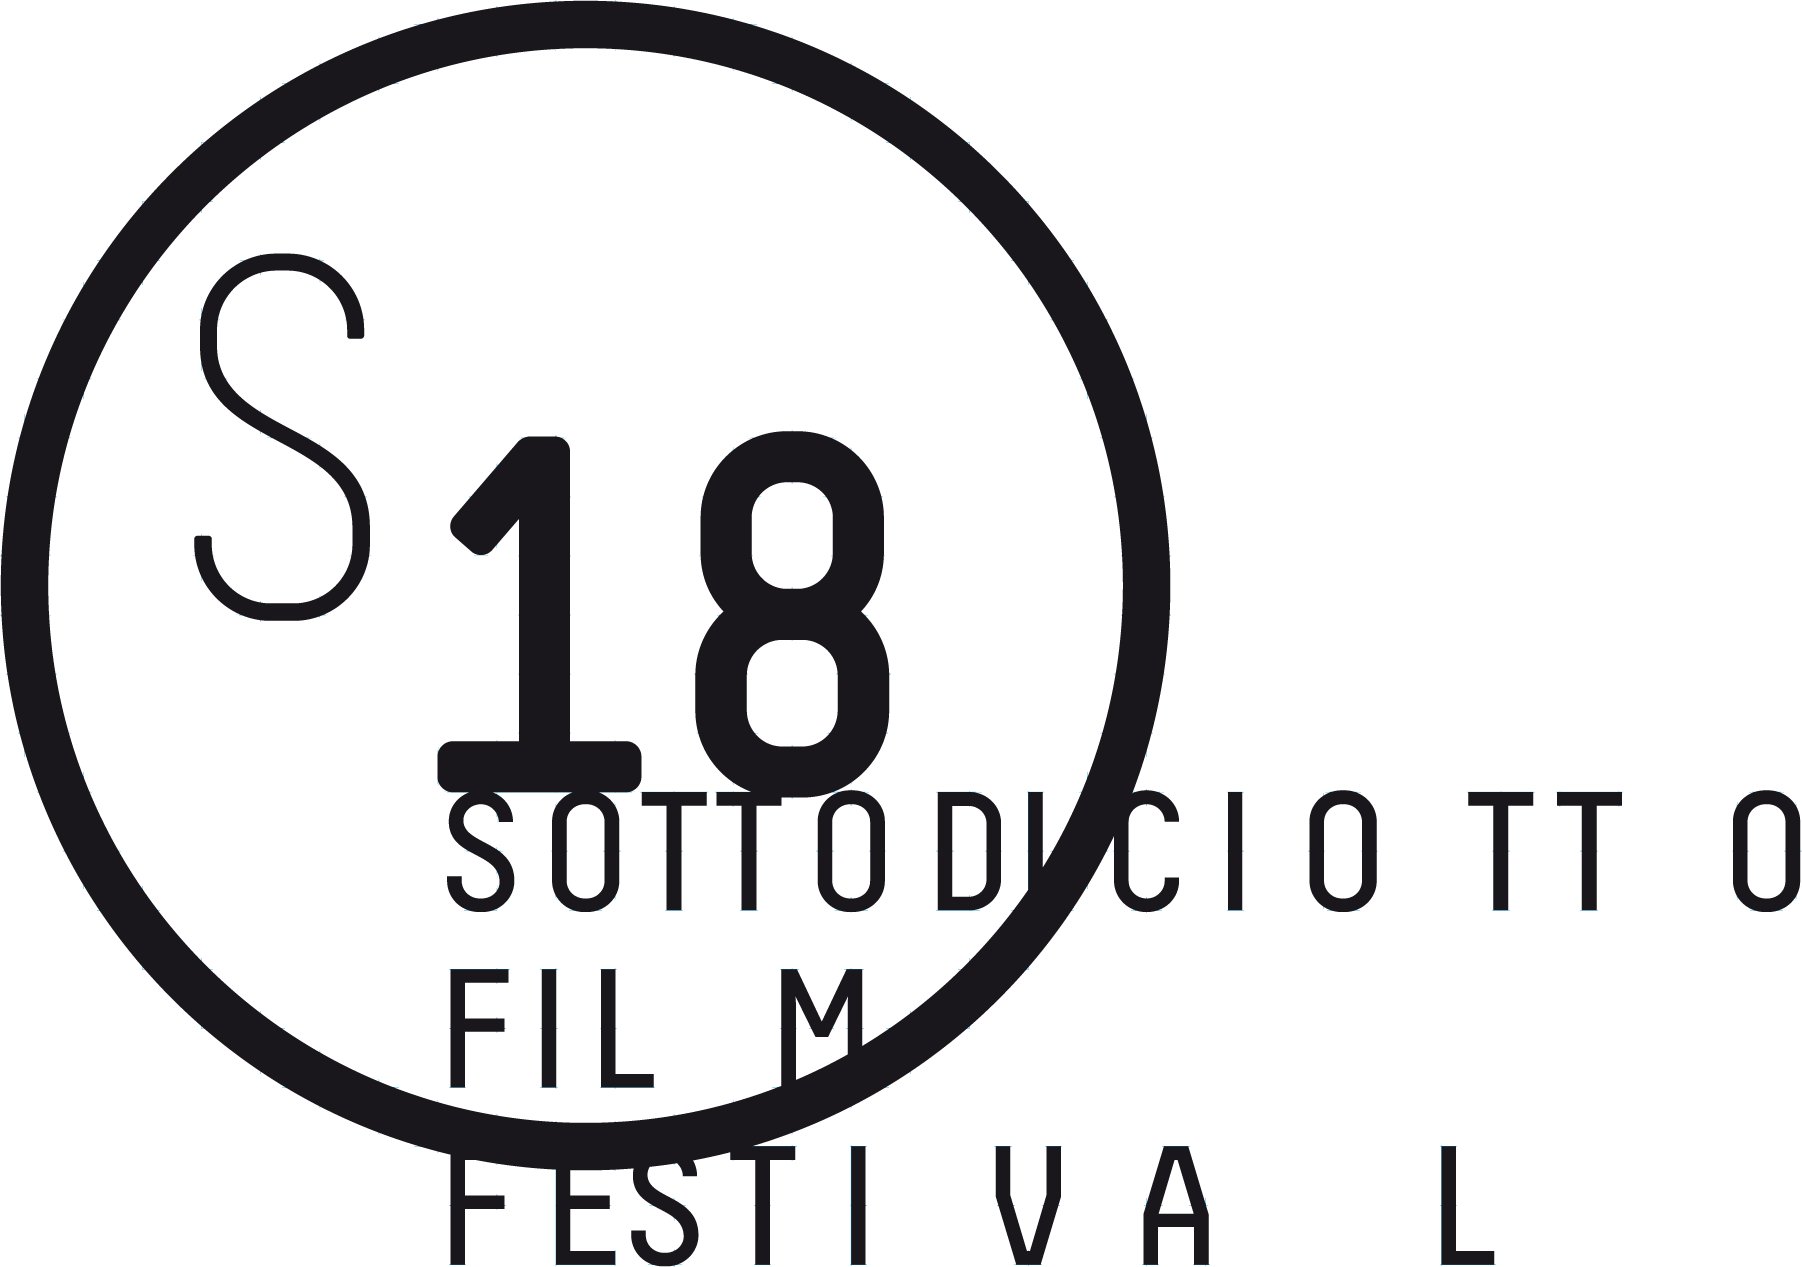 S18 - Sottodiciotto Film Festival